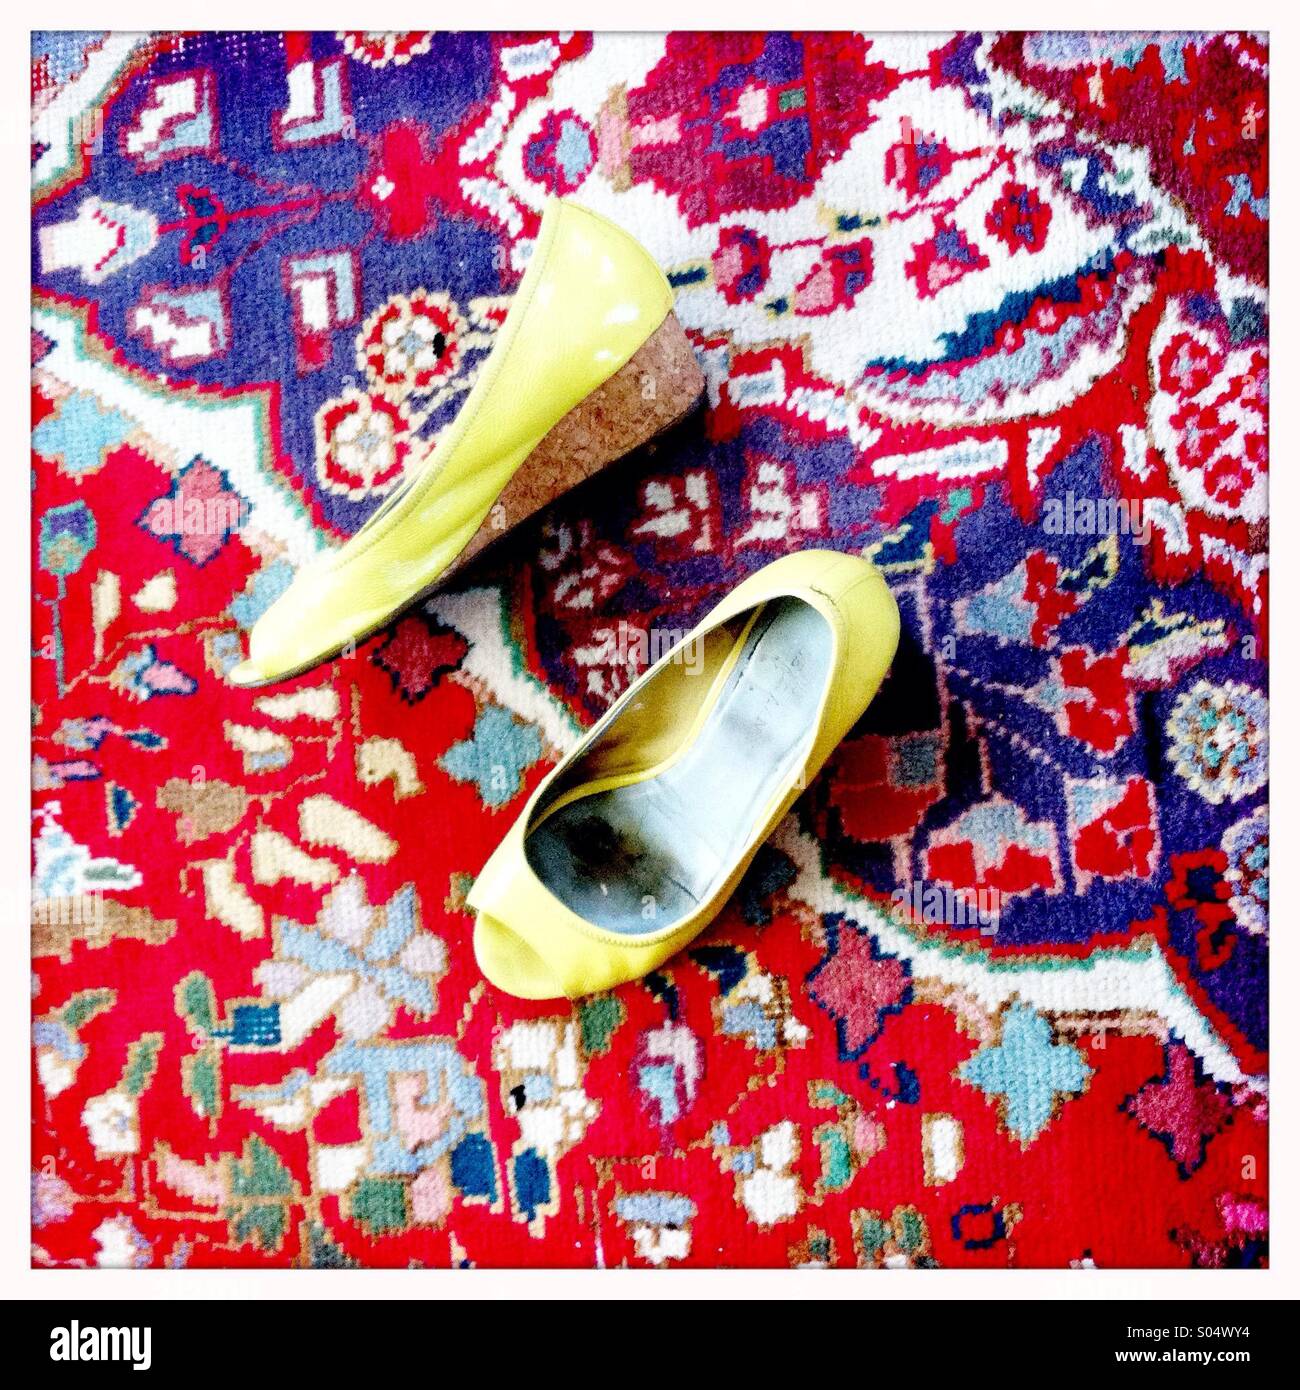 Les chaussures jaunes sur un tapis oriental aux couleurs vives Banque D'Images